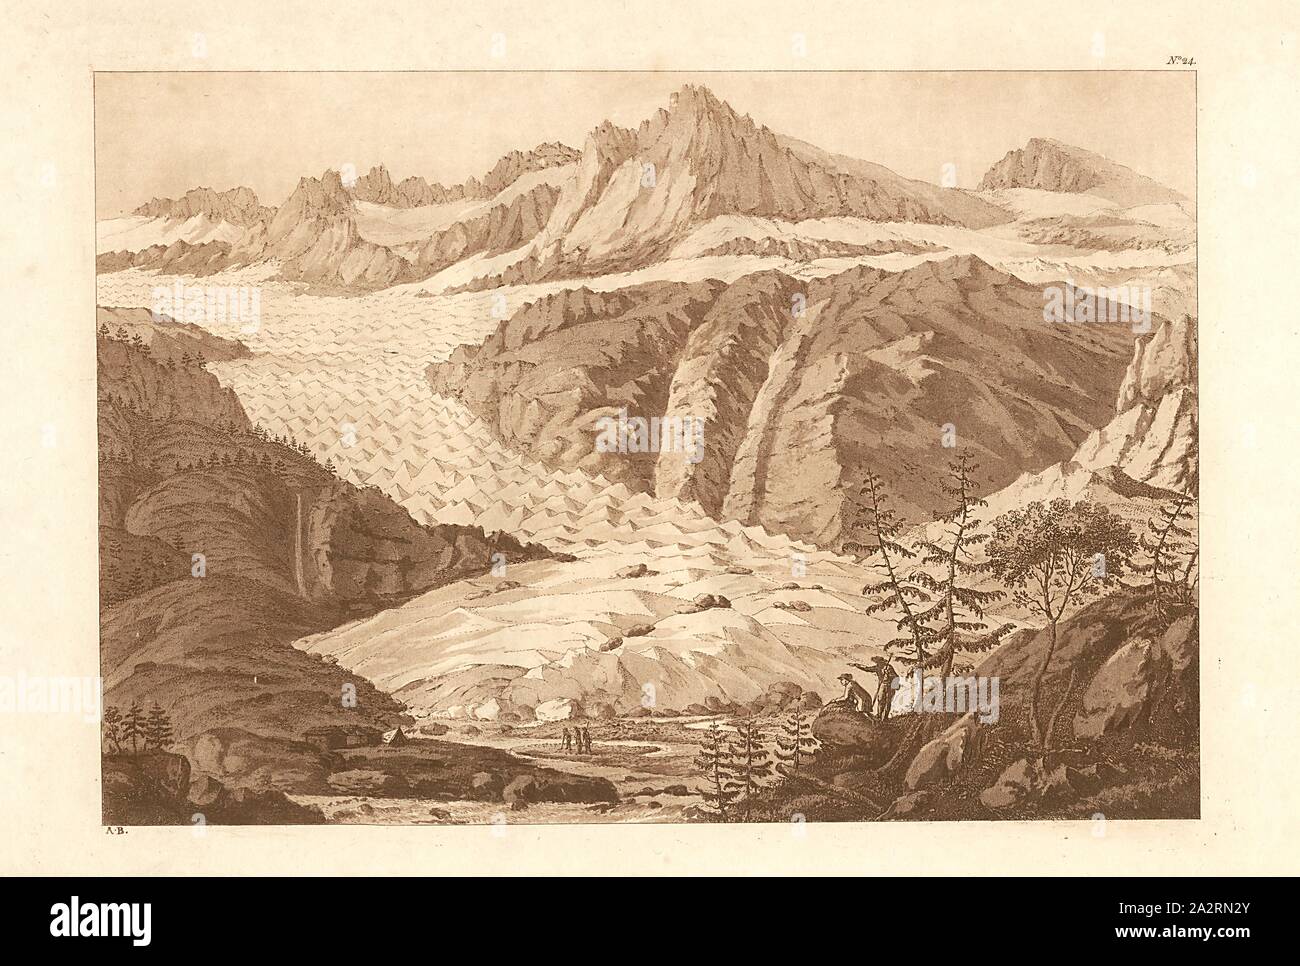 Furka ghiacciaio del Rodano e molla, firmato: A. B, n. 24, dopo p. 108 Foto Stock